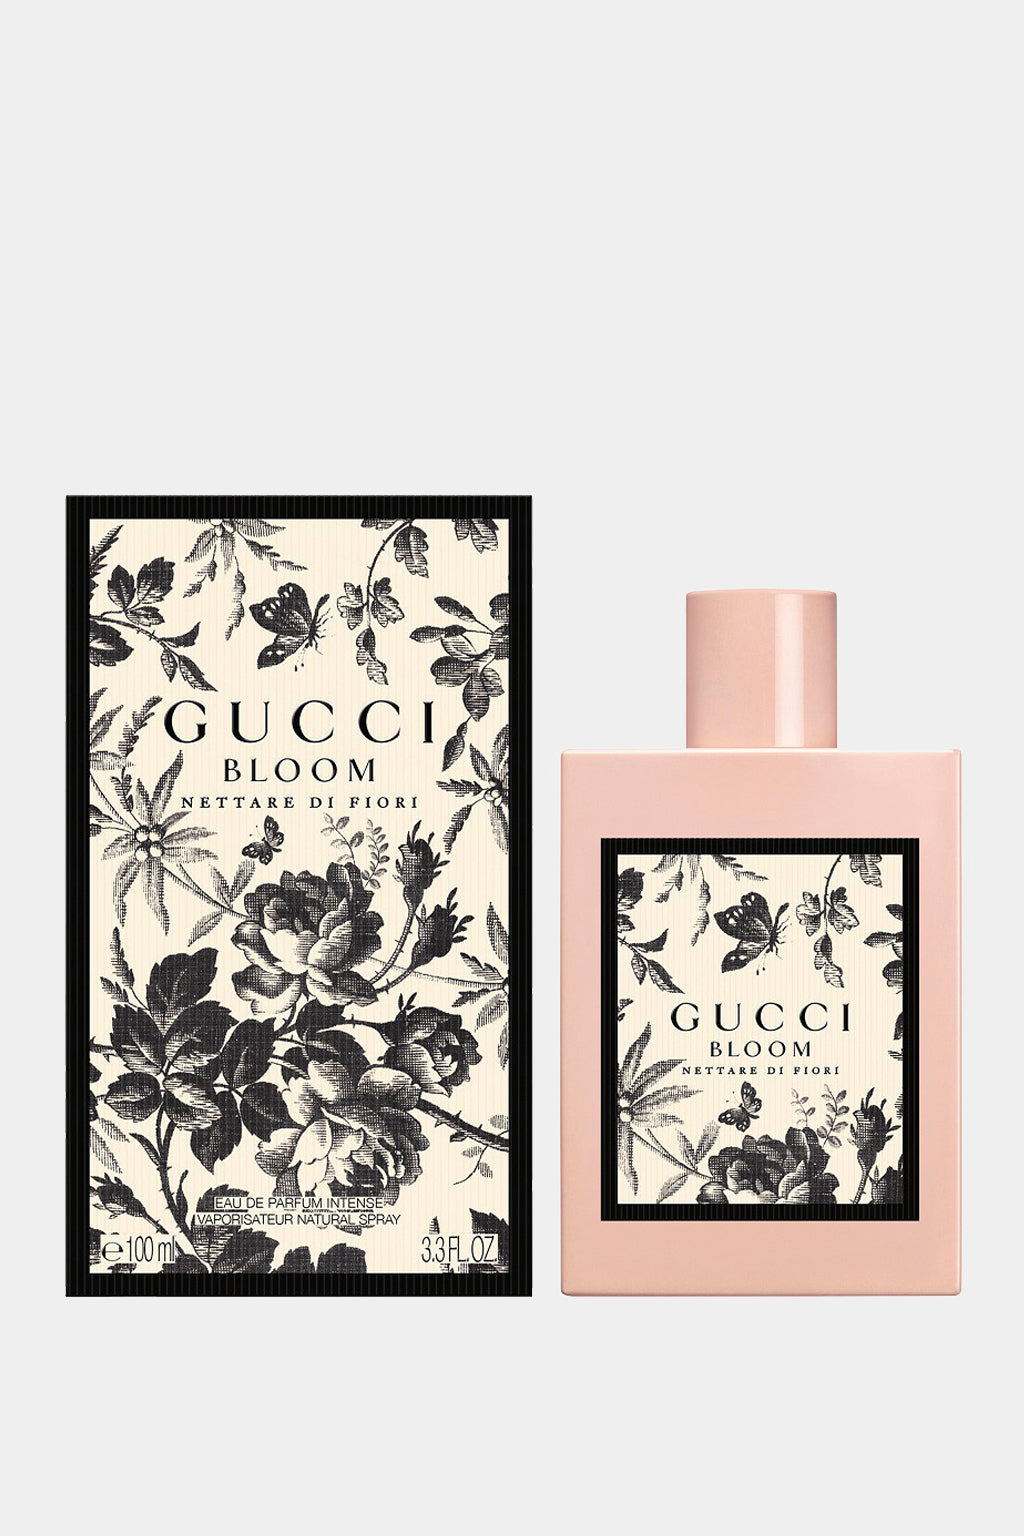 Gucci - Bloom Nettare Di Fiori Eau de Parfum